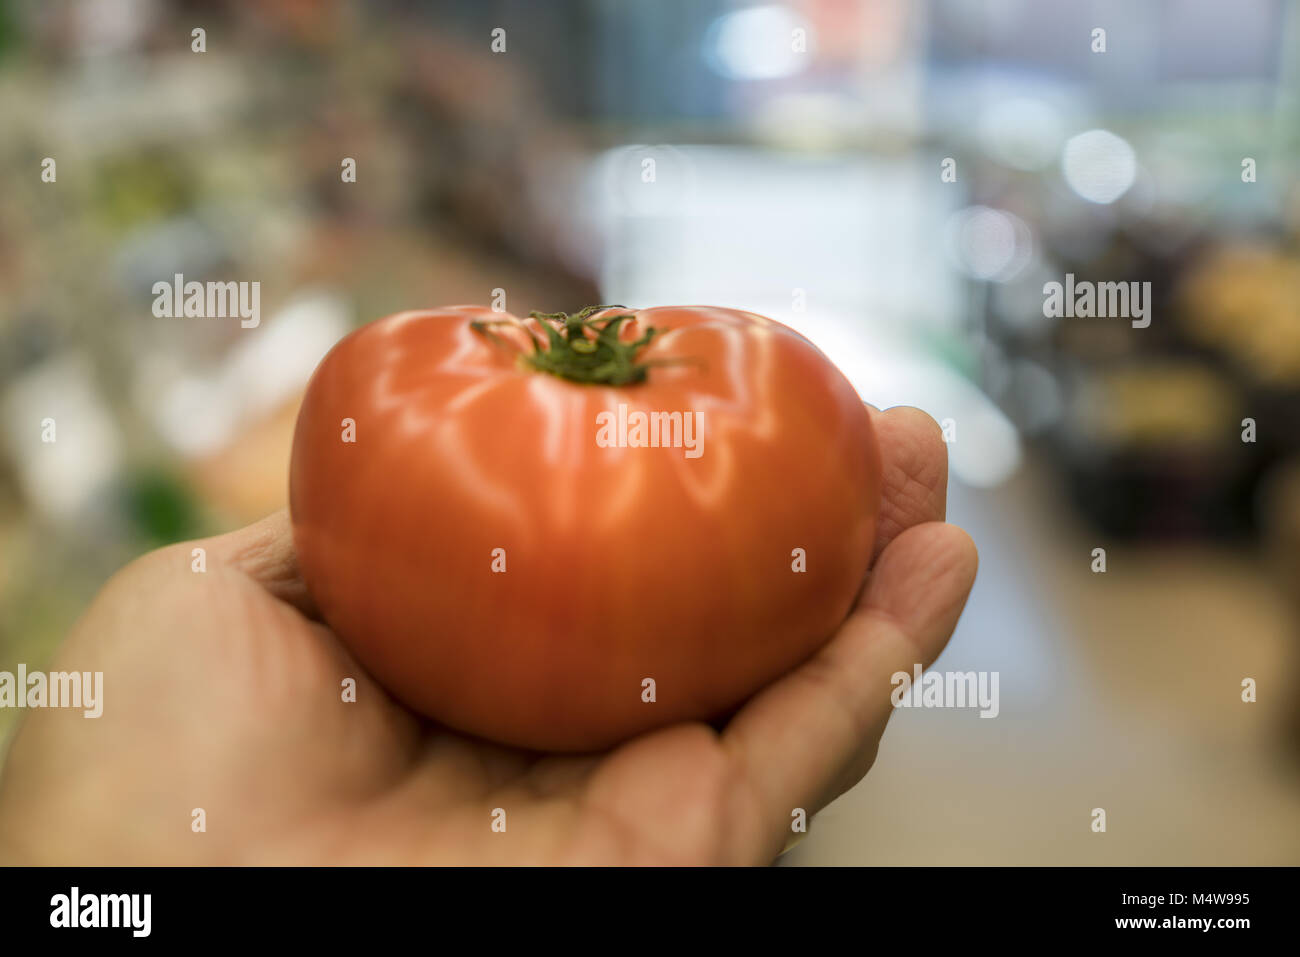 Una mano sujetando un tomate fresco en el supermercado Foto de stock